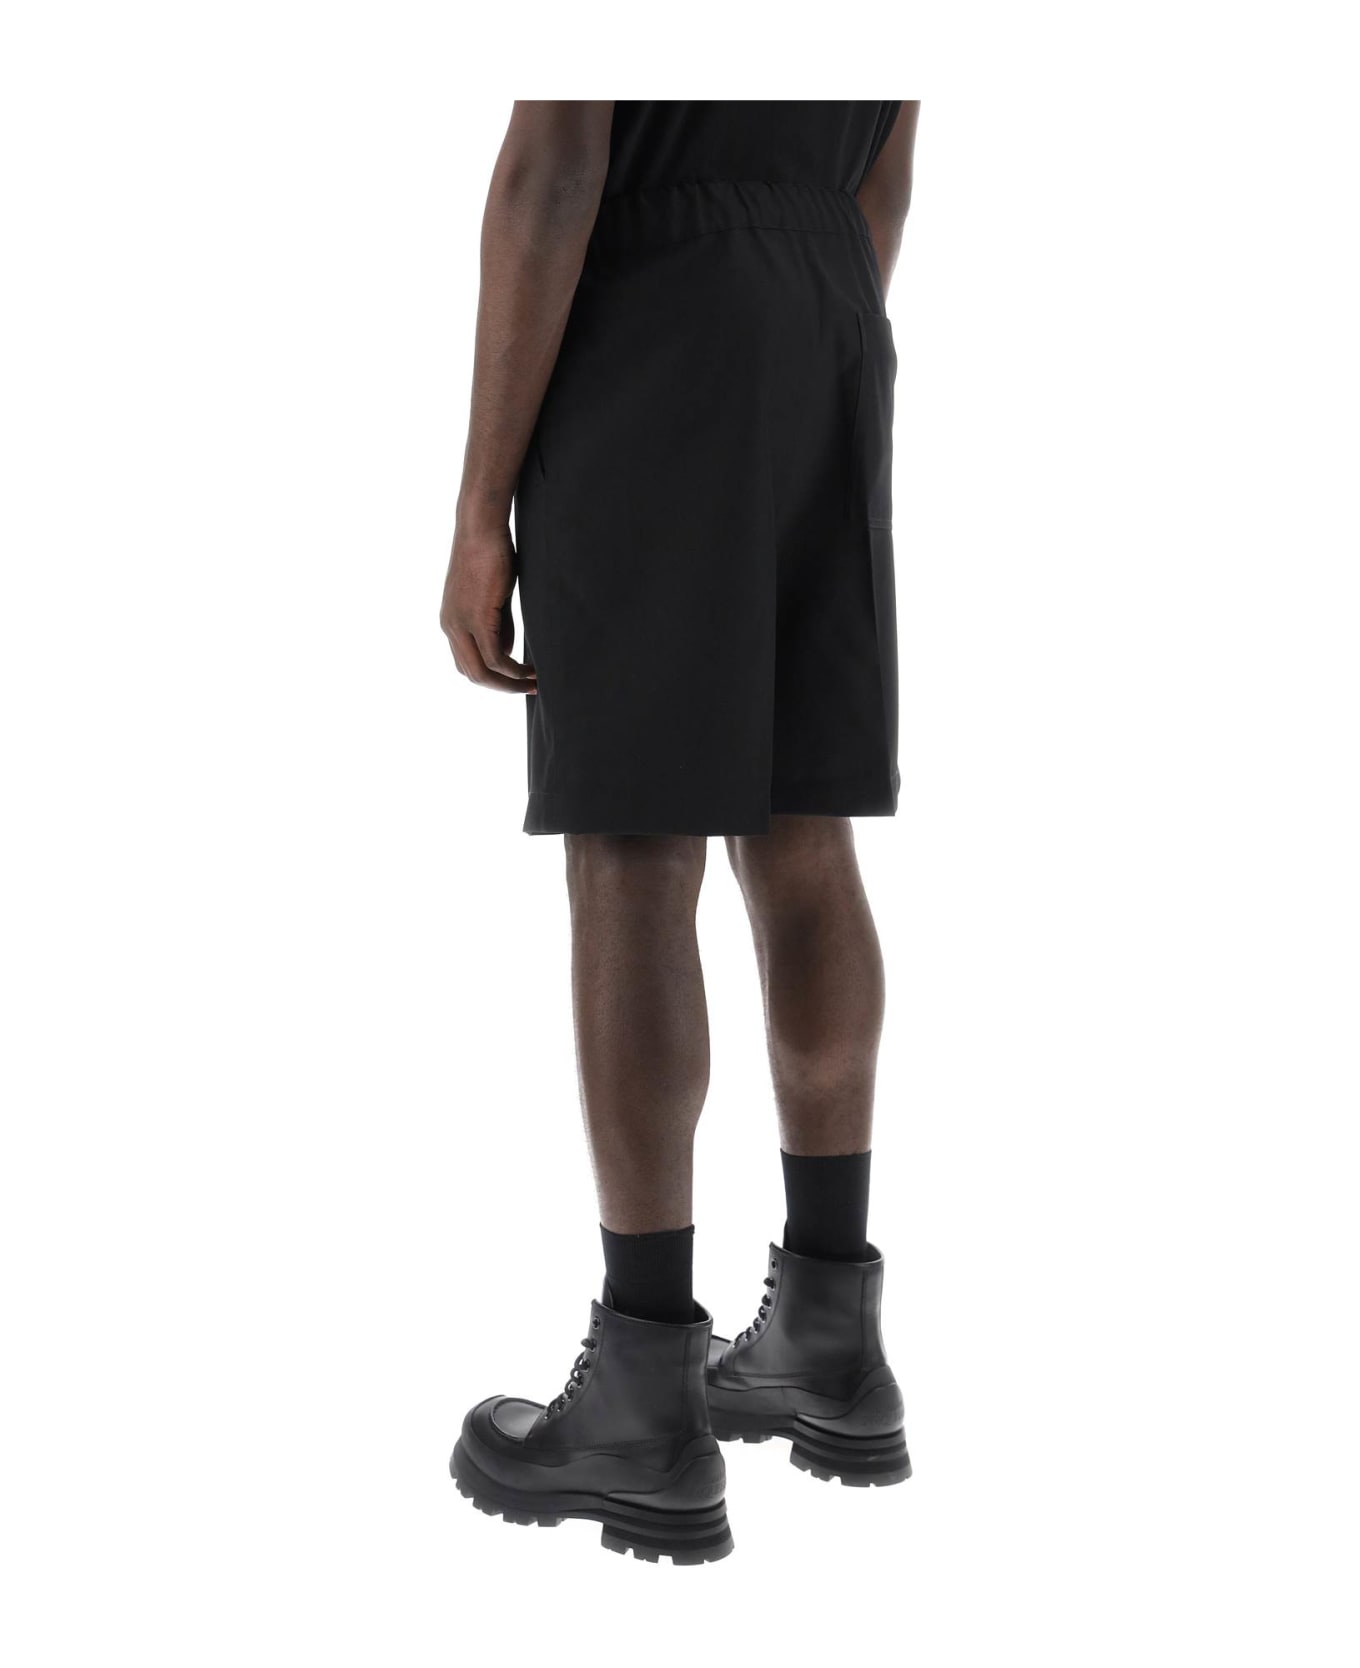 OAMC Shorts With Elasticated Waistband - BLACK (Black)